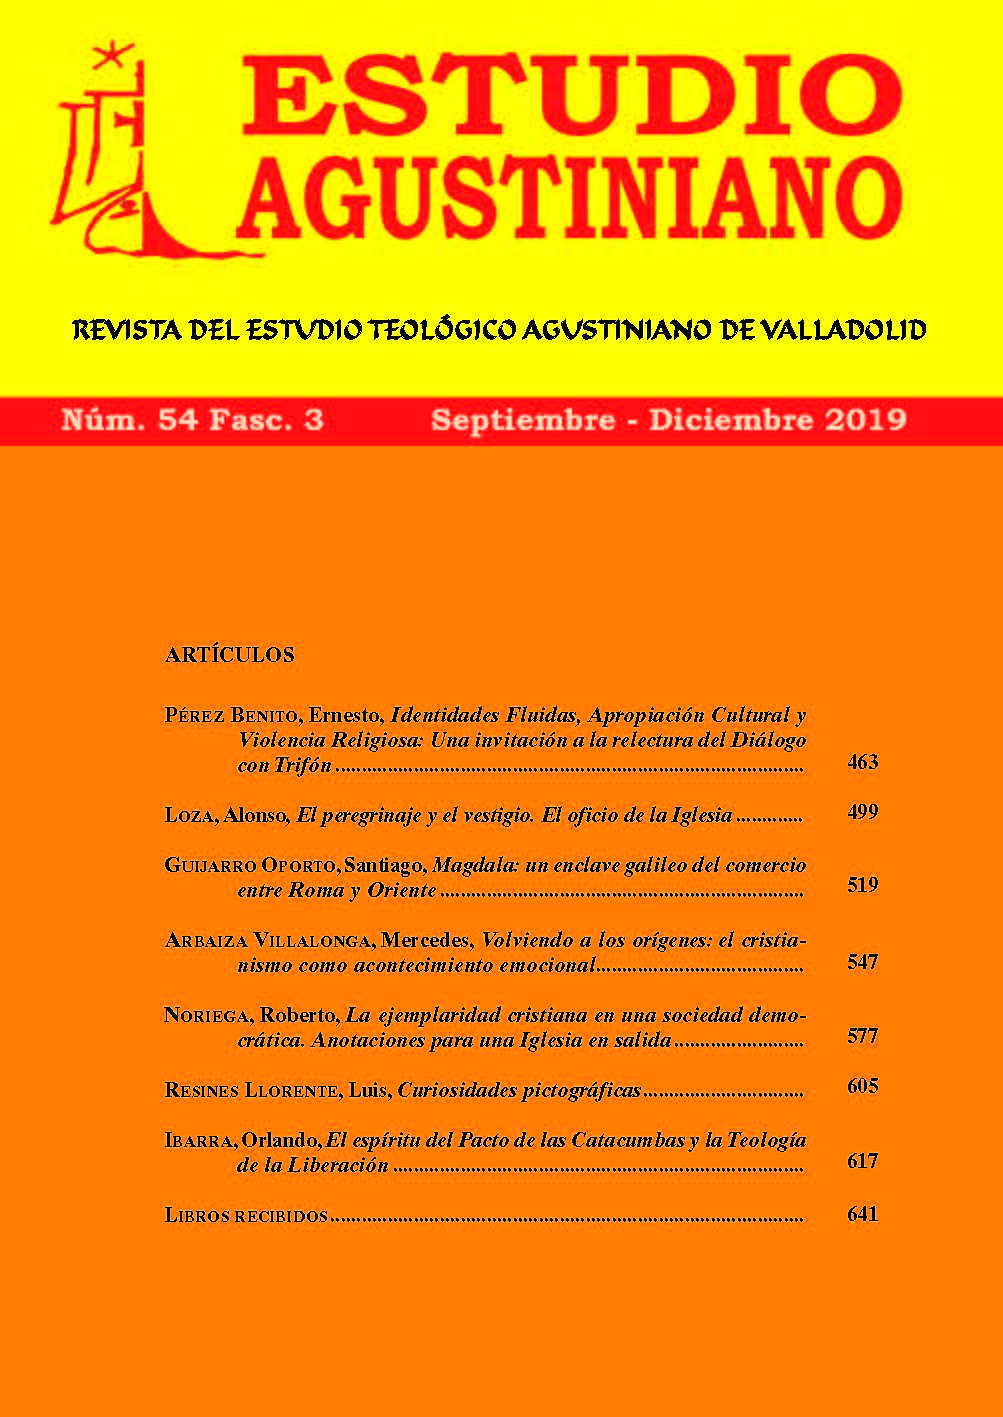 					Ver Vol. 54 Núm. 3 (2019): Estudio Agustiniano
				